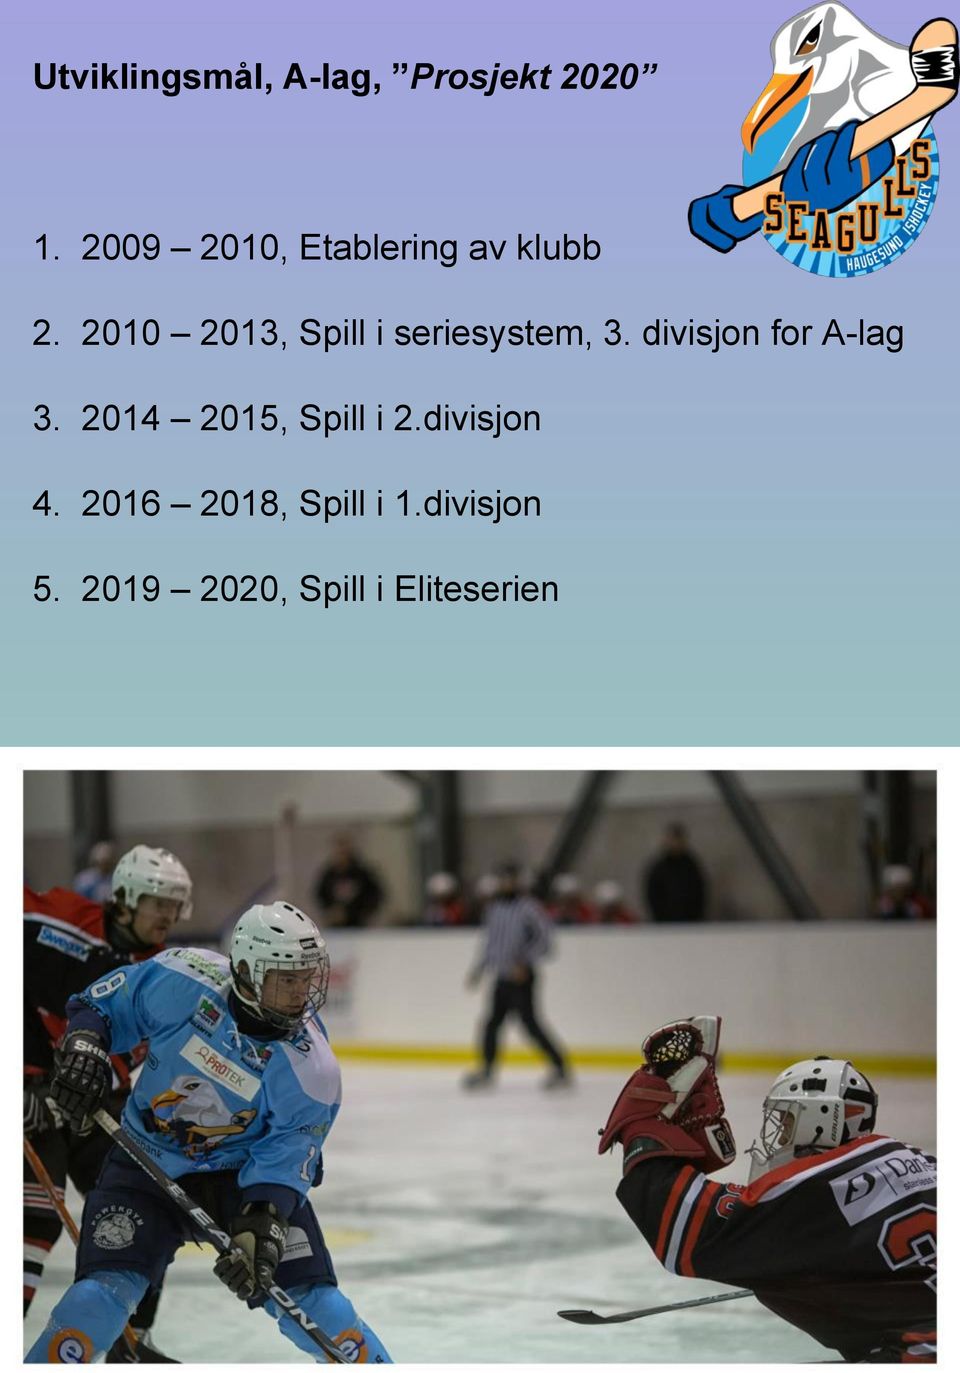 2010 2013, Spill i seriesystem, 3. divisjon for A-lag 3.